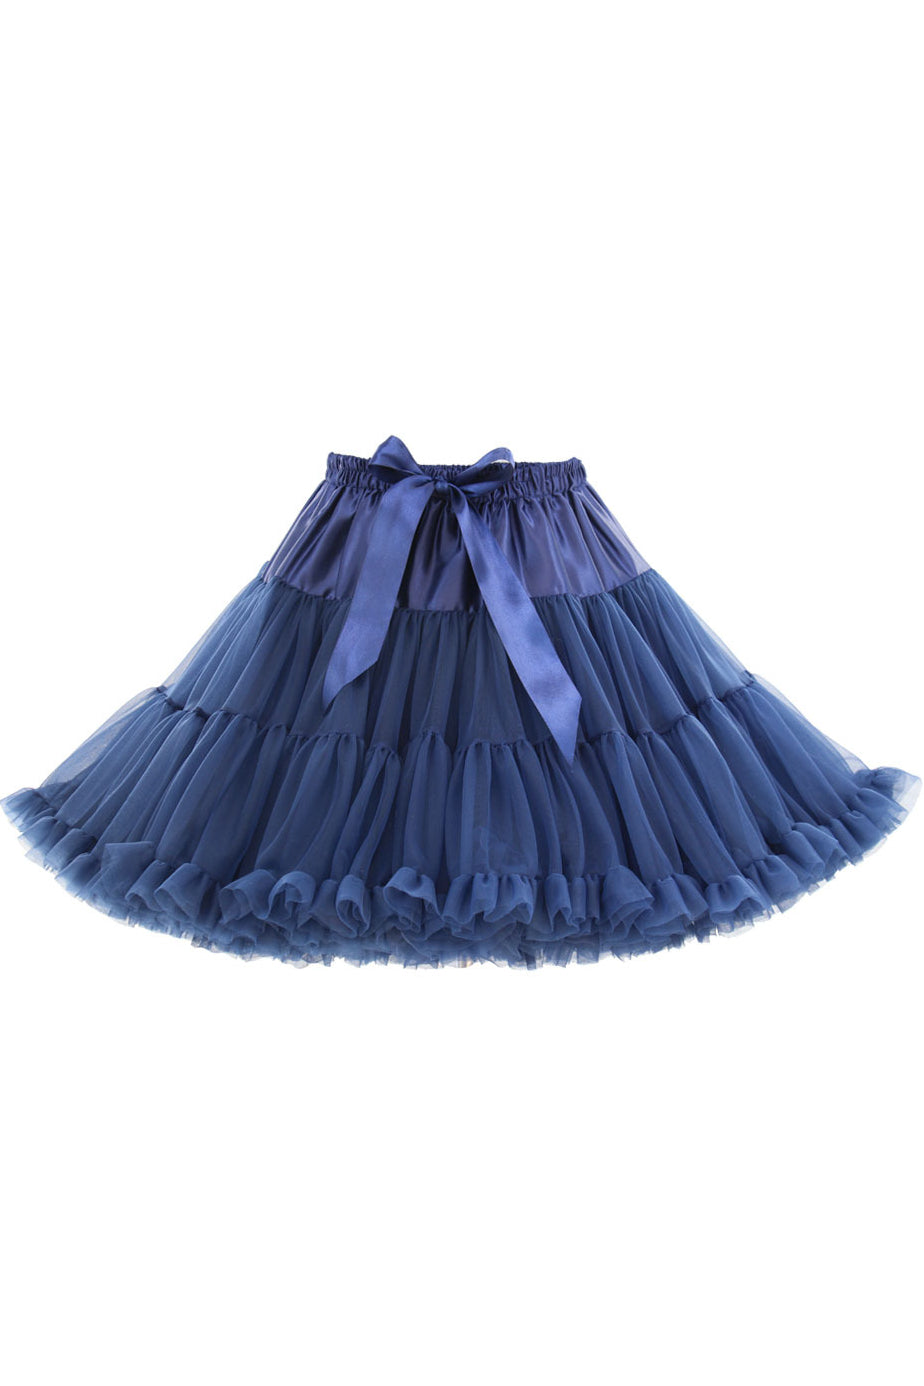 Regency Tulle Ruffled Tutu Mini Petticoat